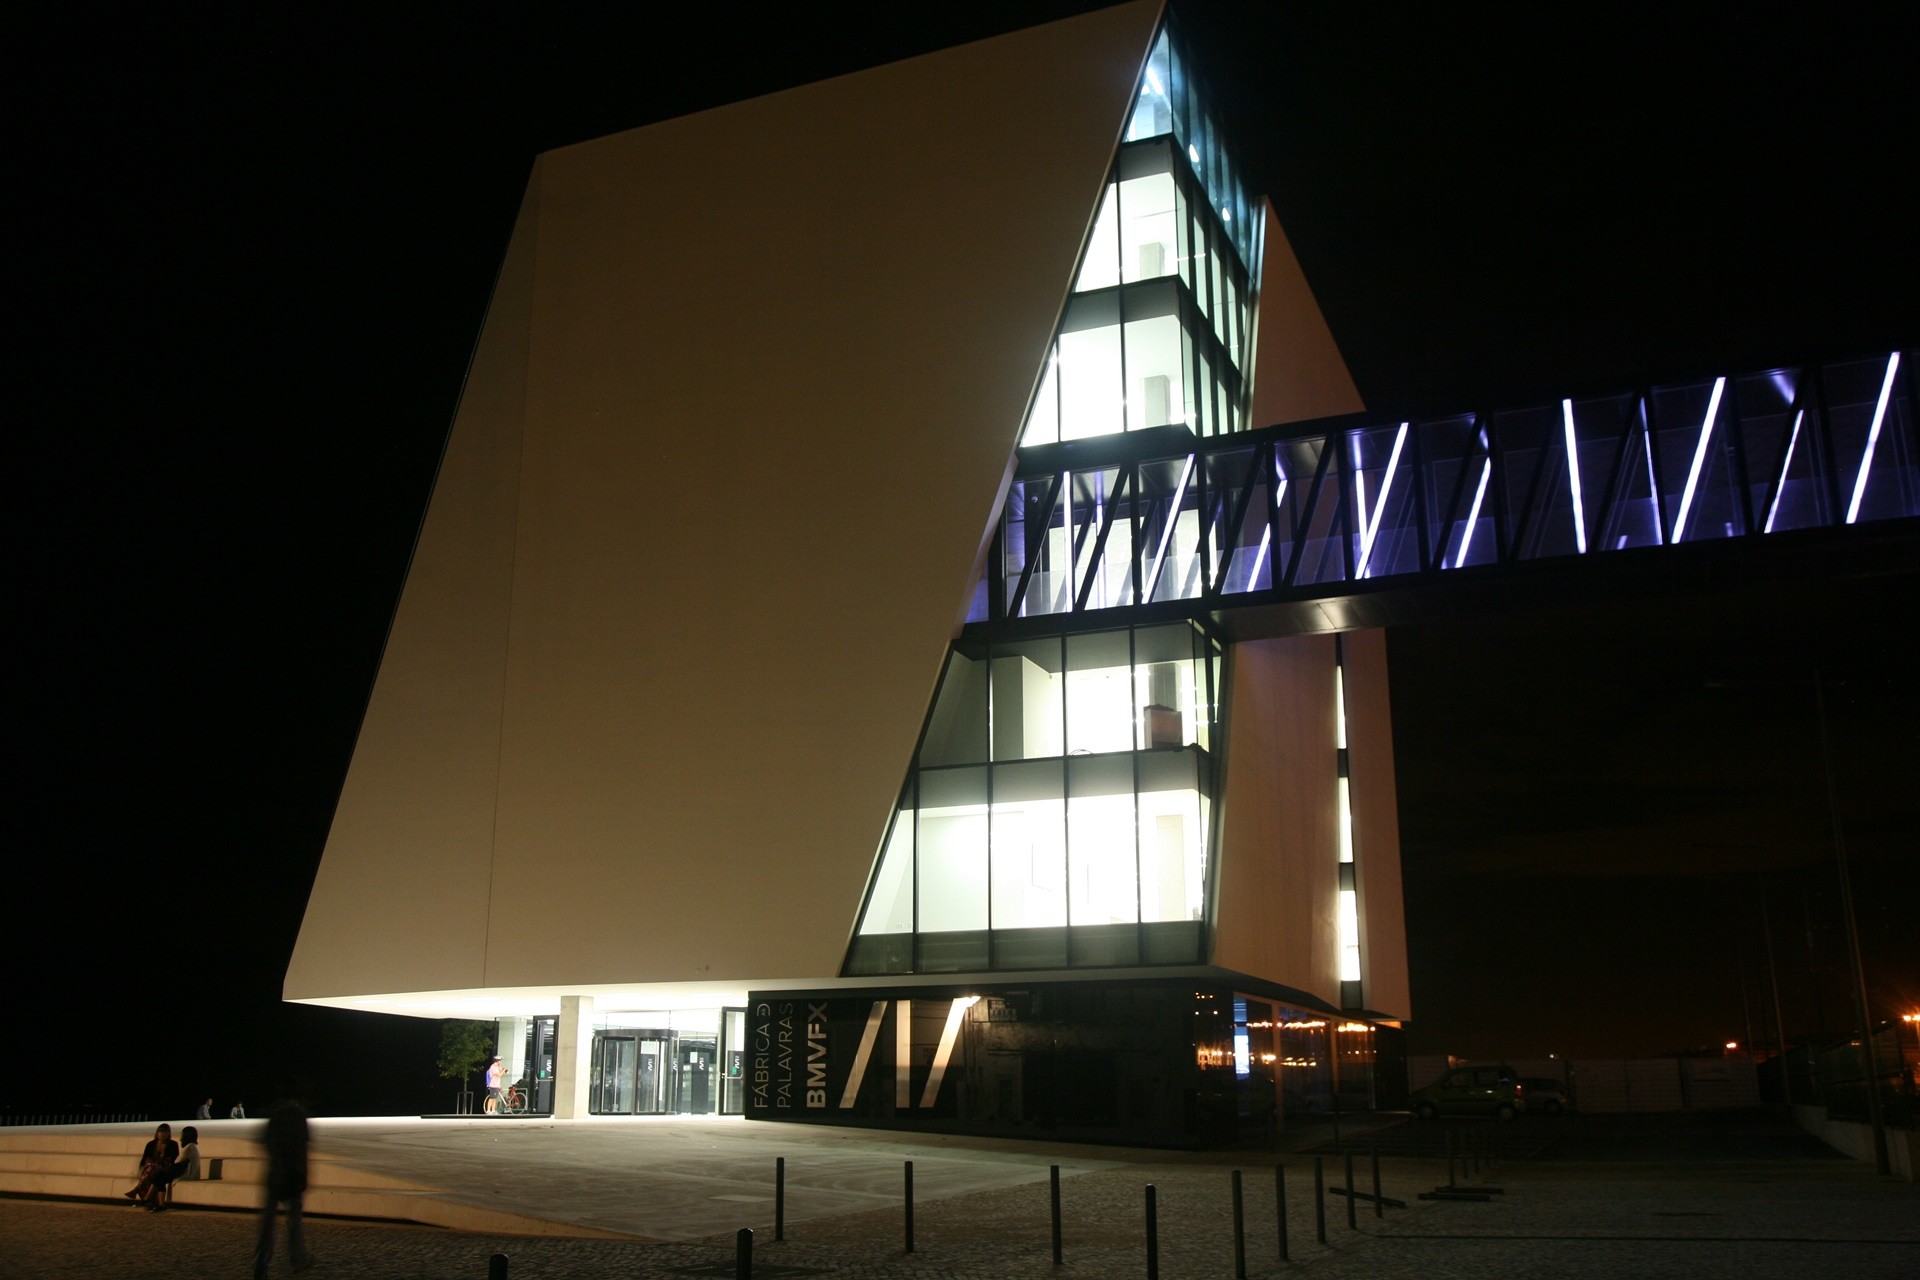 Fábrica das Palavras – Biblioteca Municipal e Equipamento Cultural de Vila Franca de Xira